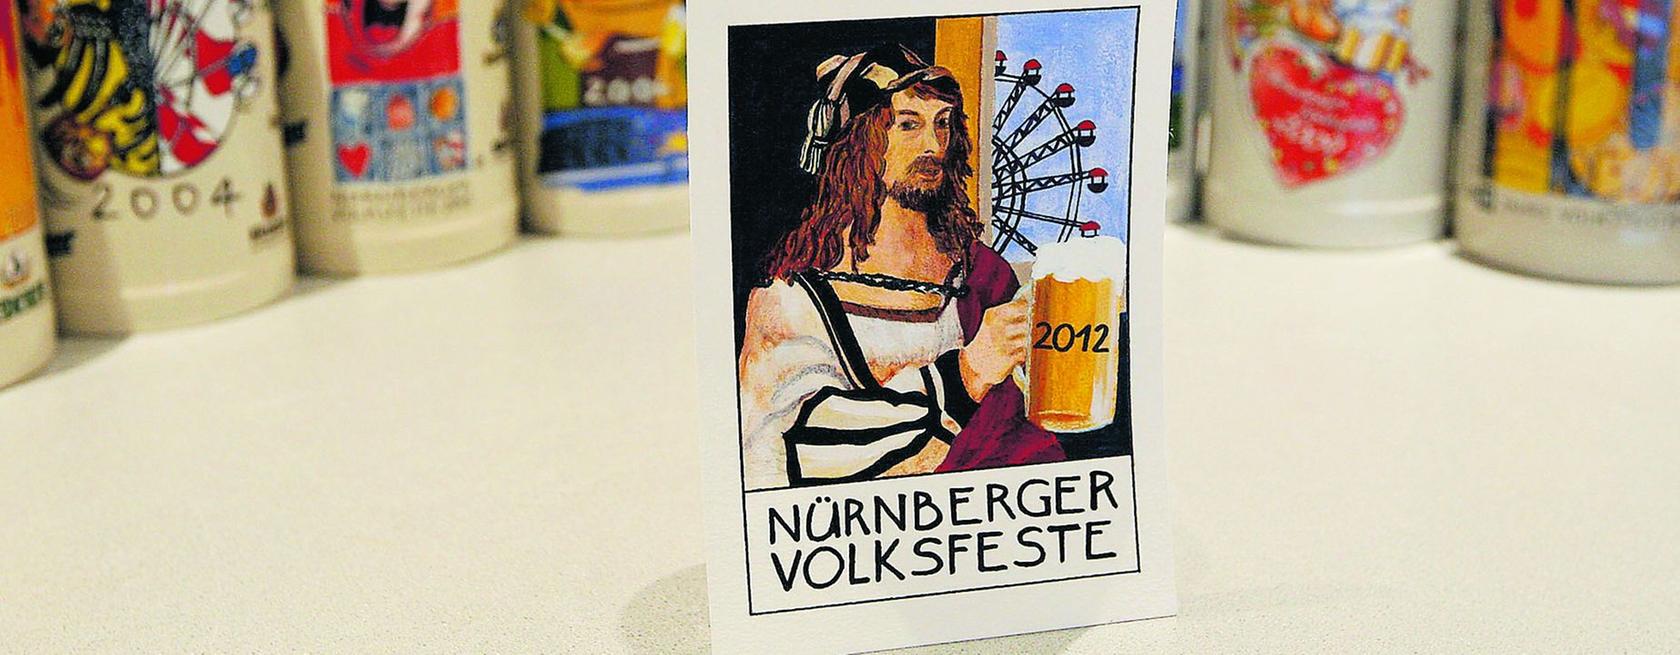 Das Dürer-Motiv der Herzogenauracherin überzeugte 2013 die Jury.